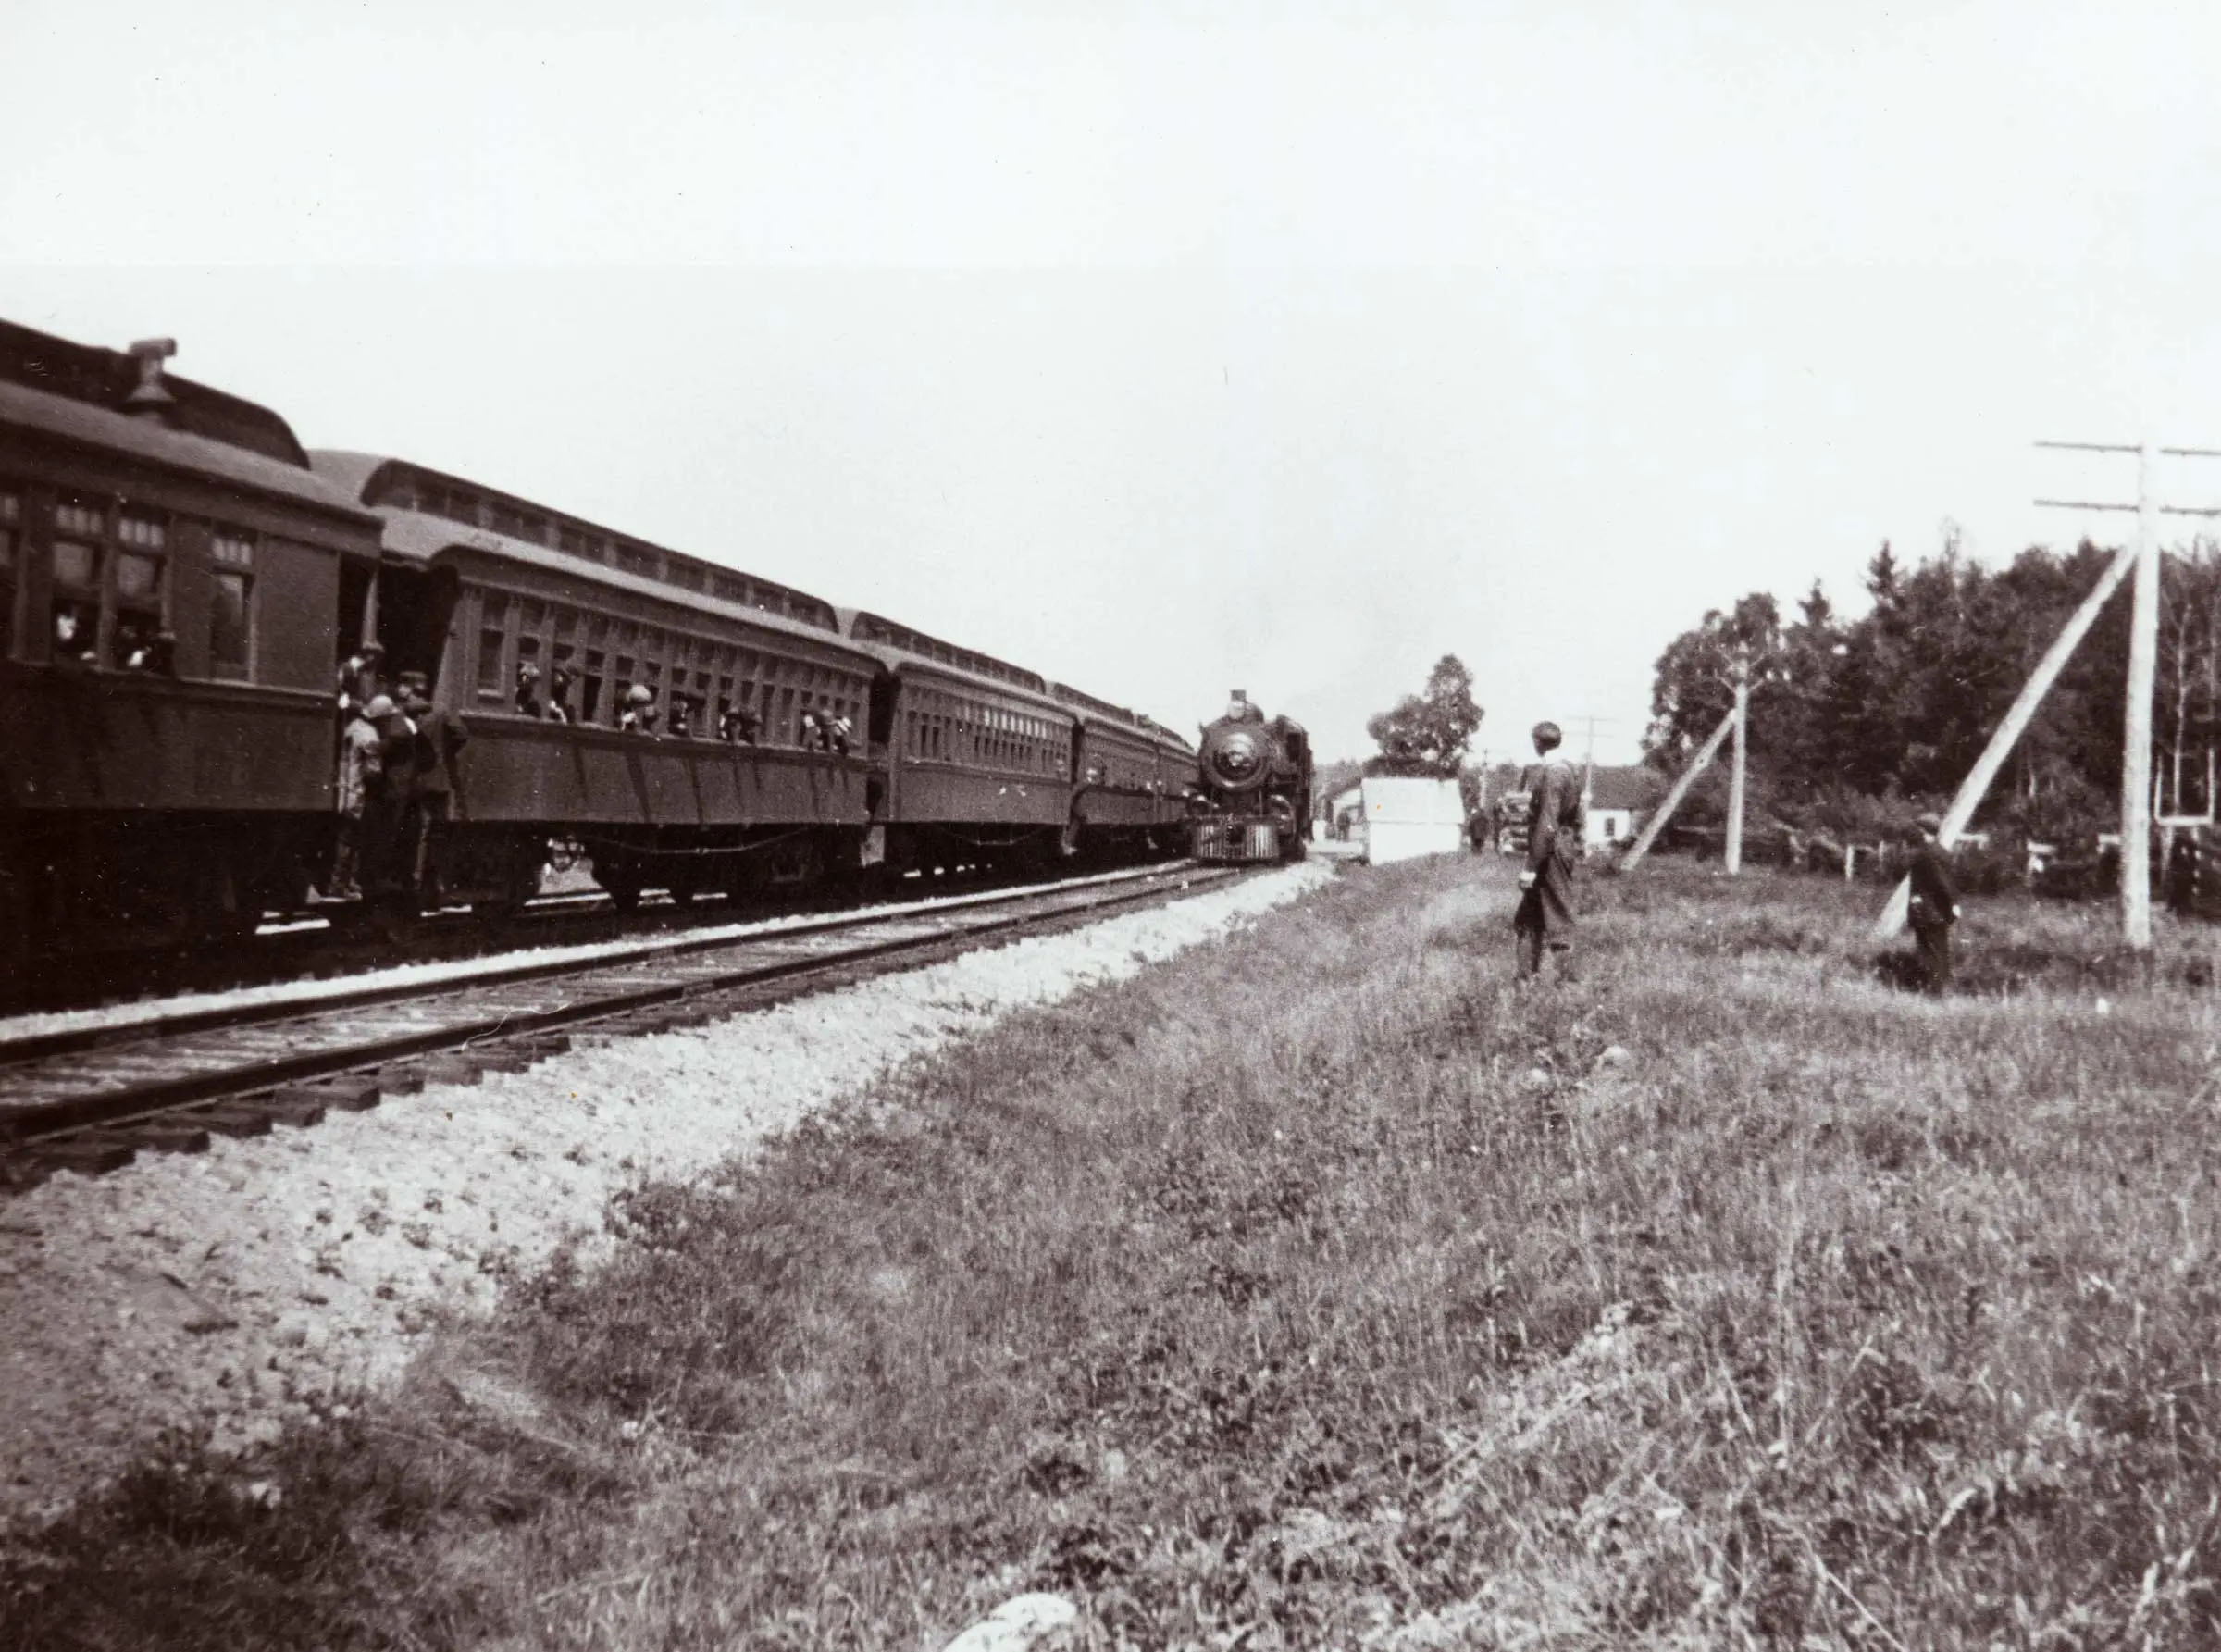 Long train sur une voie courbée, avec quelques passagers qui regardent par les fenêtres